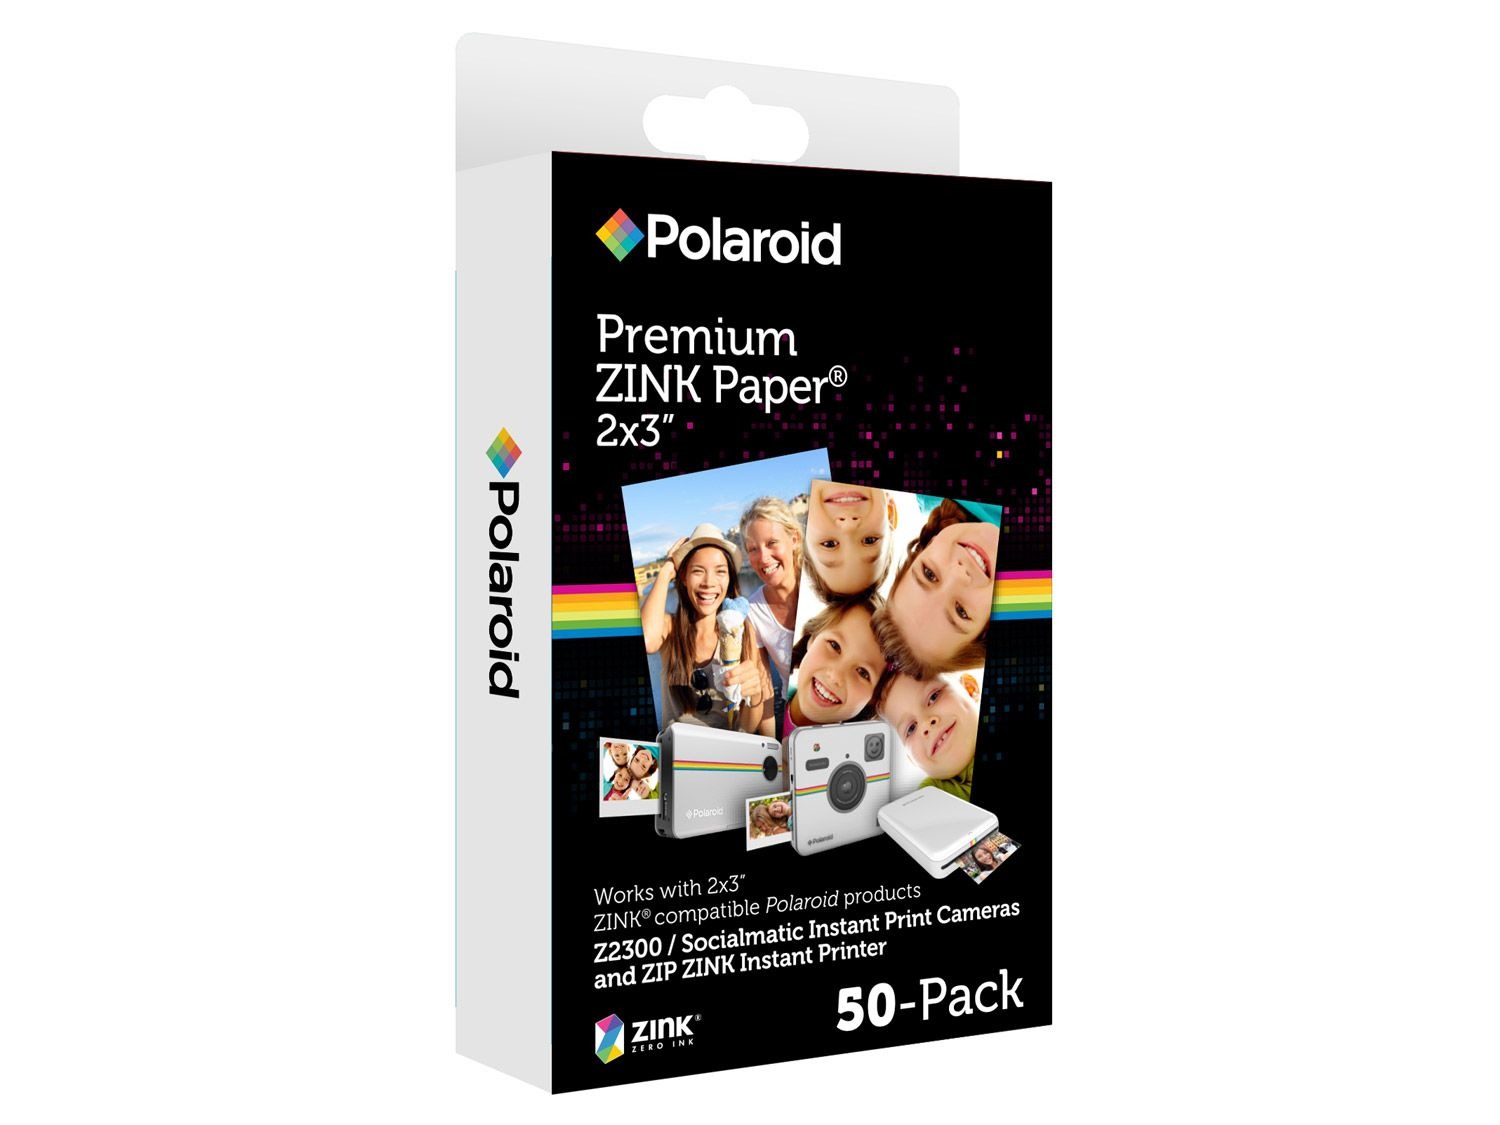 Franje Subjectief baan Polaroid Zink fotopapier online kopen op Lidl.be